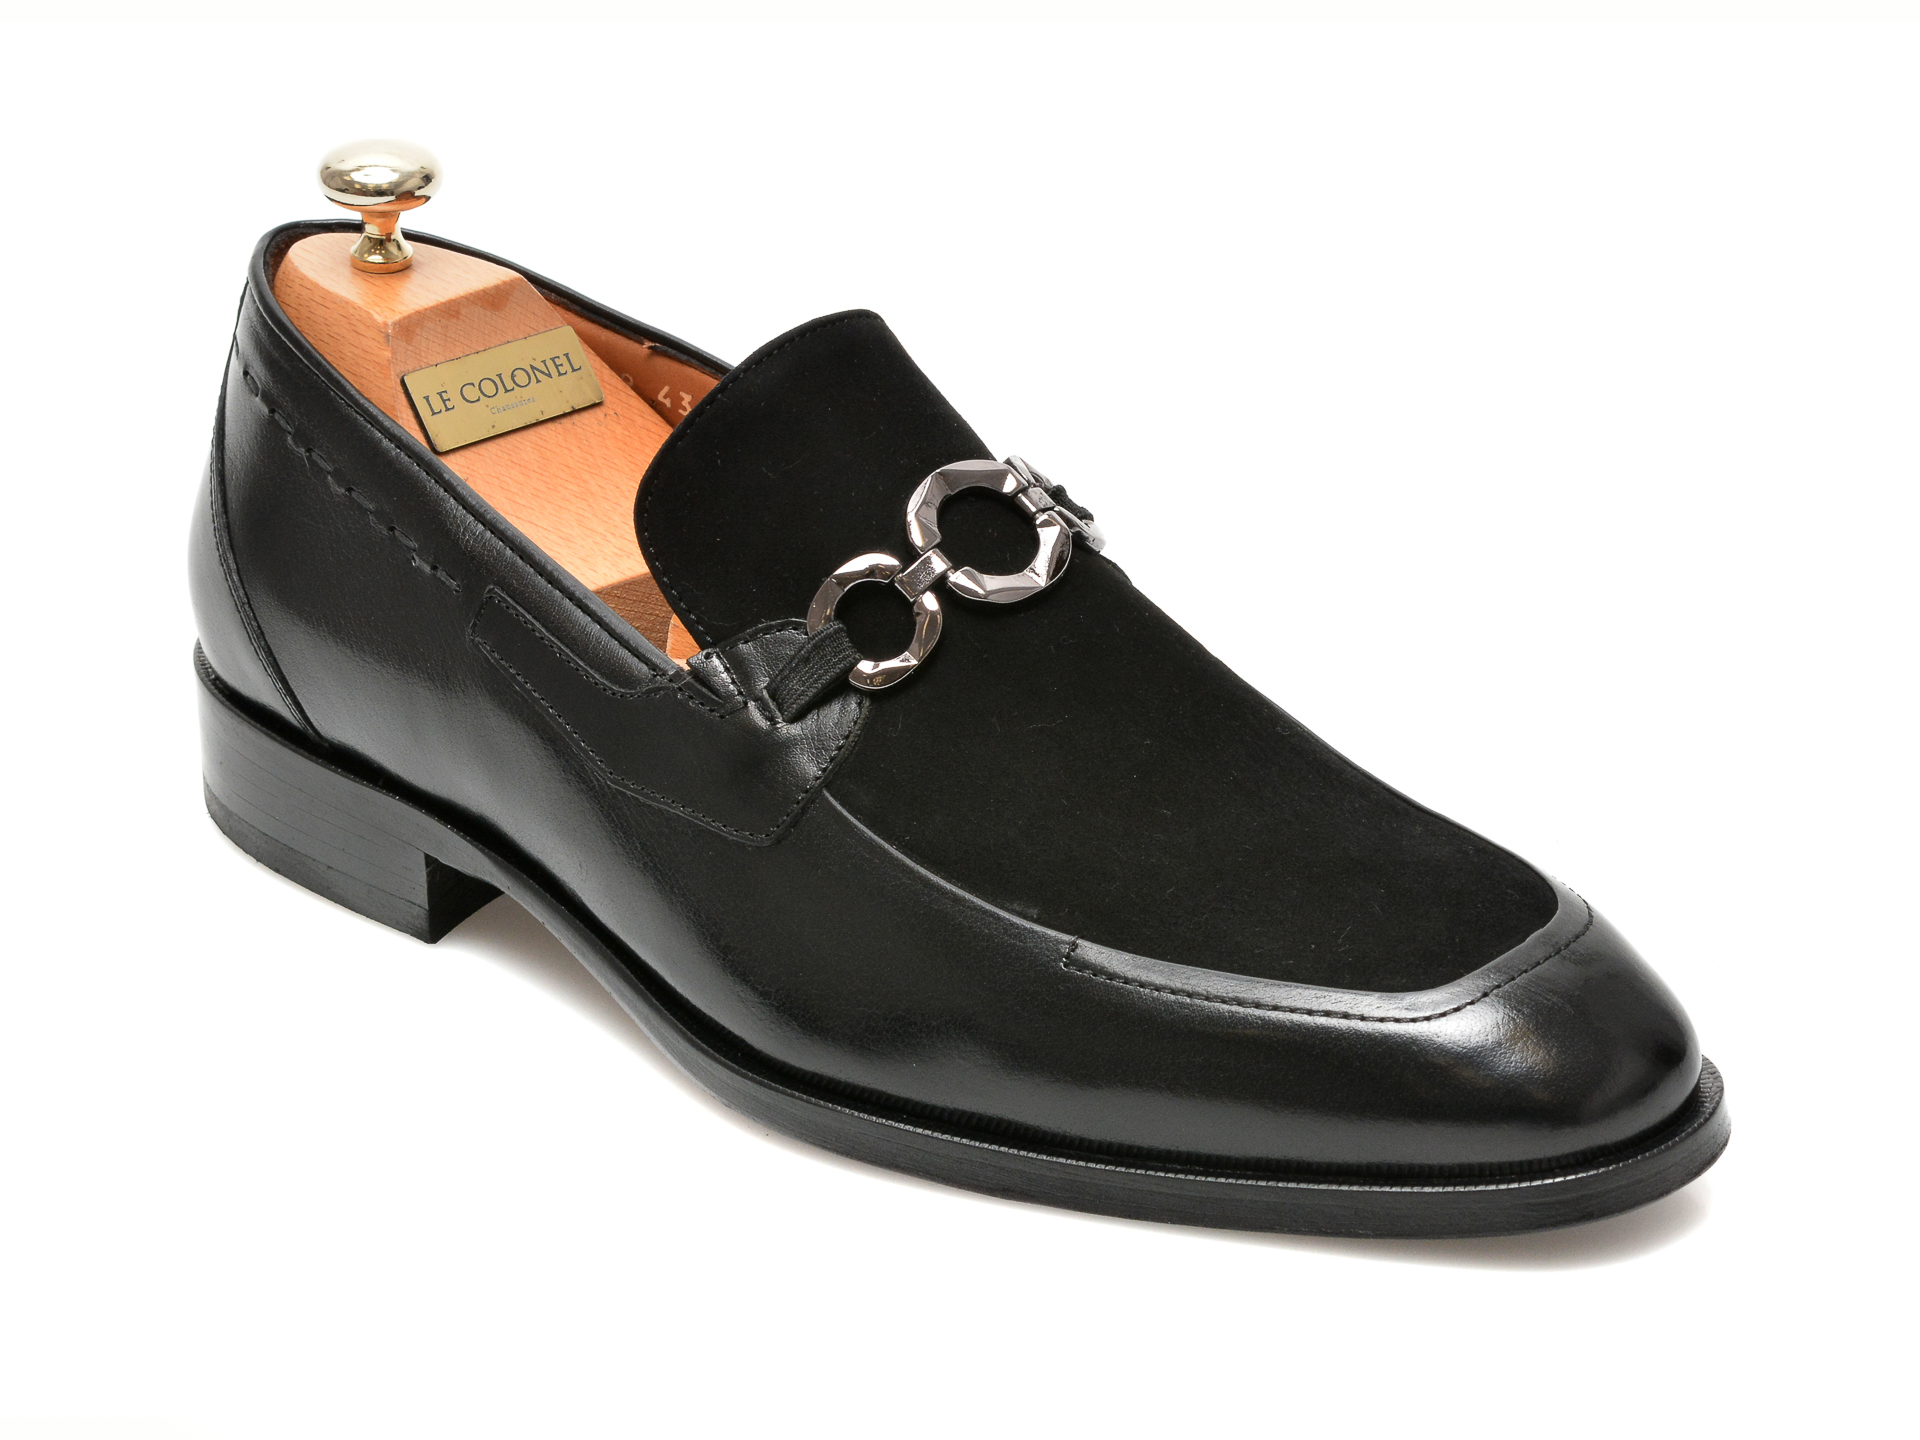 Pantofi LE COLONEL negri, 48469, din piele naturala Le Colonel